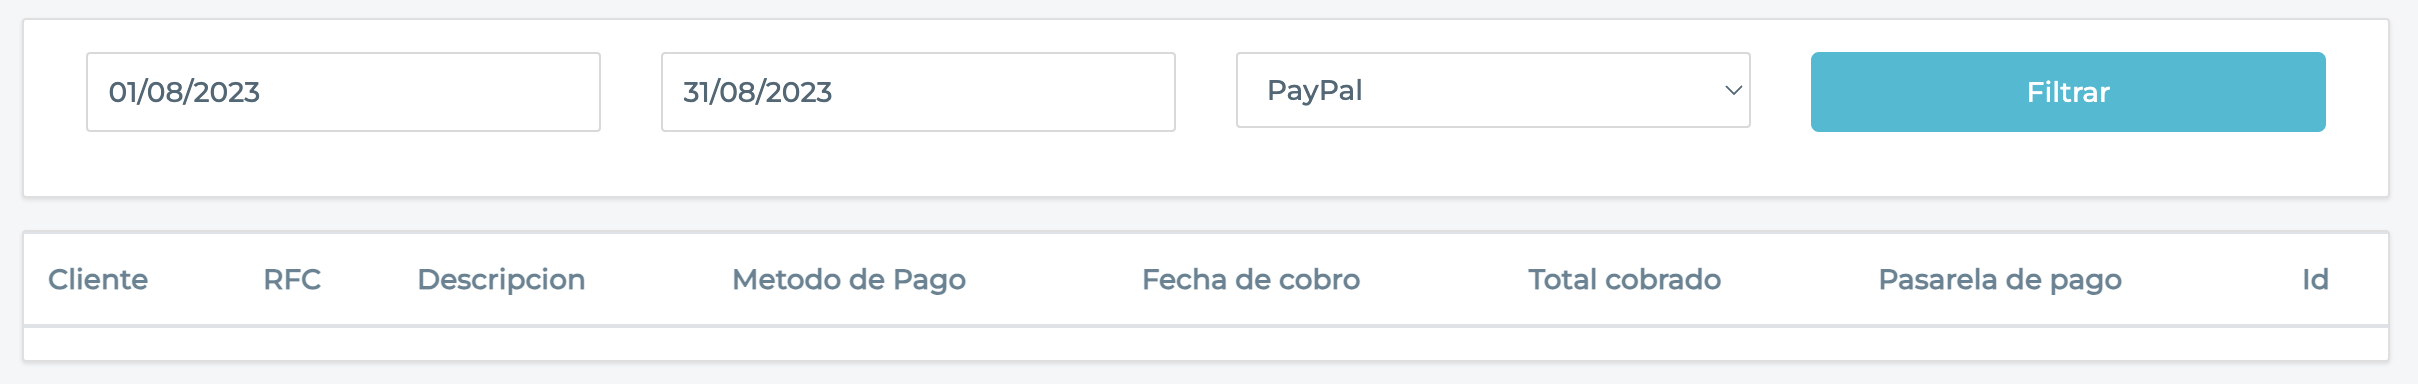 Sección de informe de PayPal con campos para elegir filtrar.